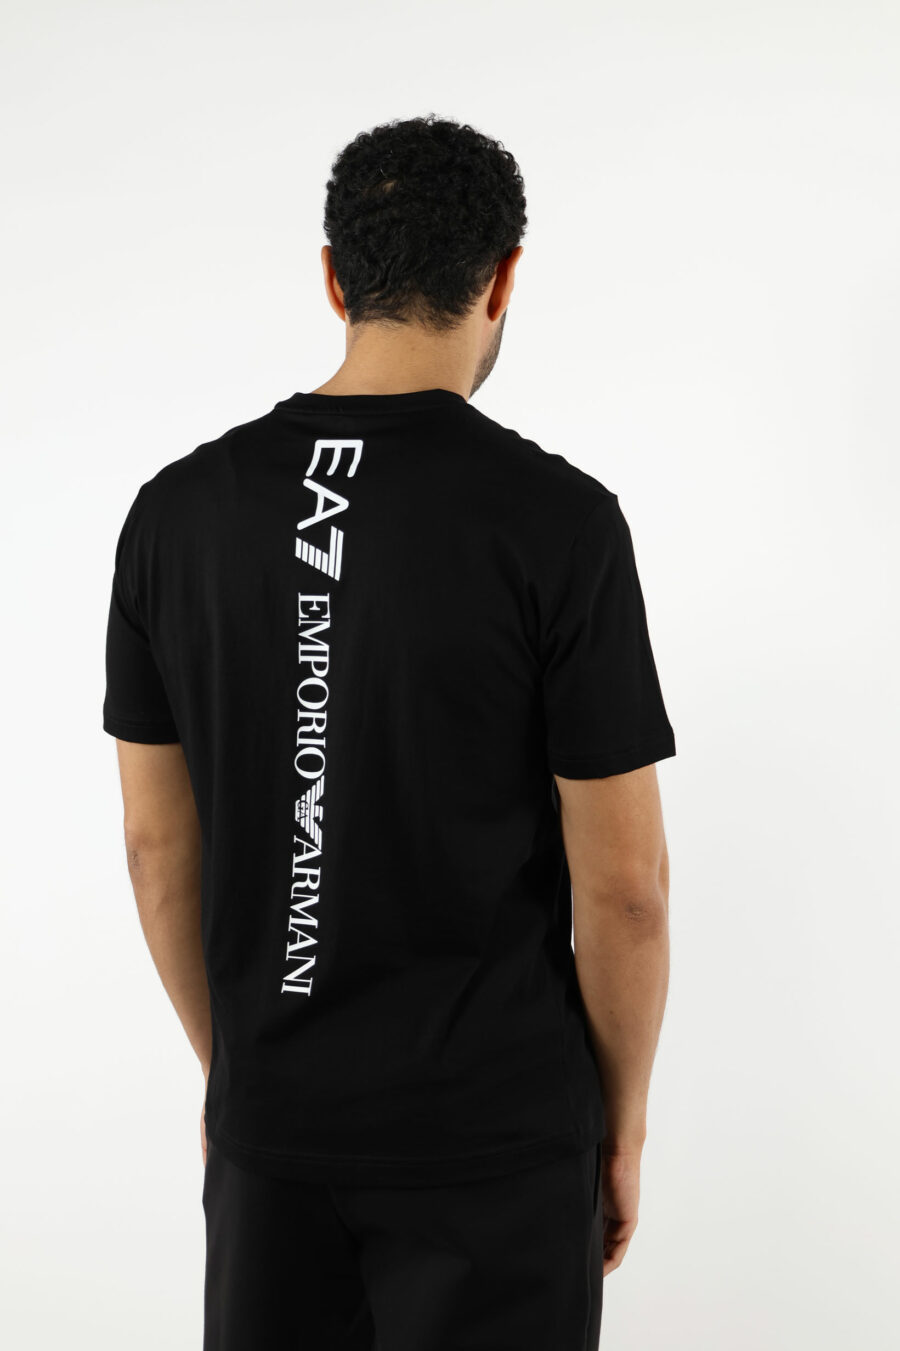 Camiseta negra con maxilogo "lux identity" vertical detrás - 110887